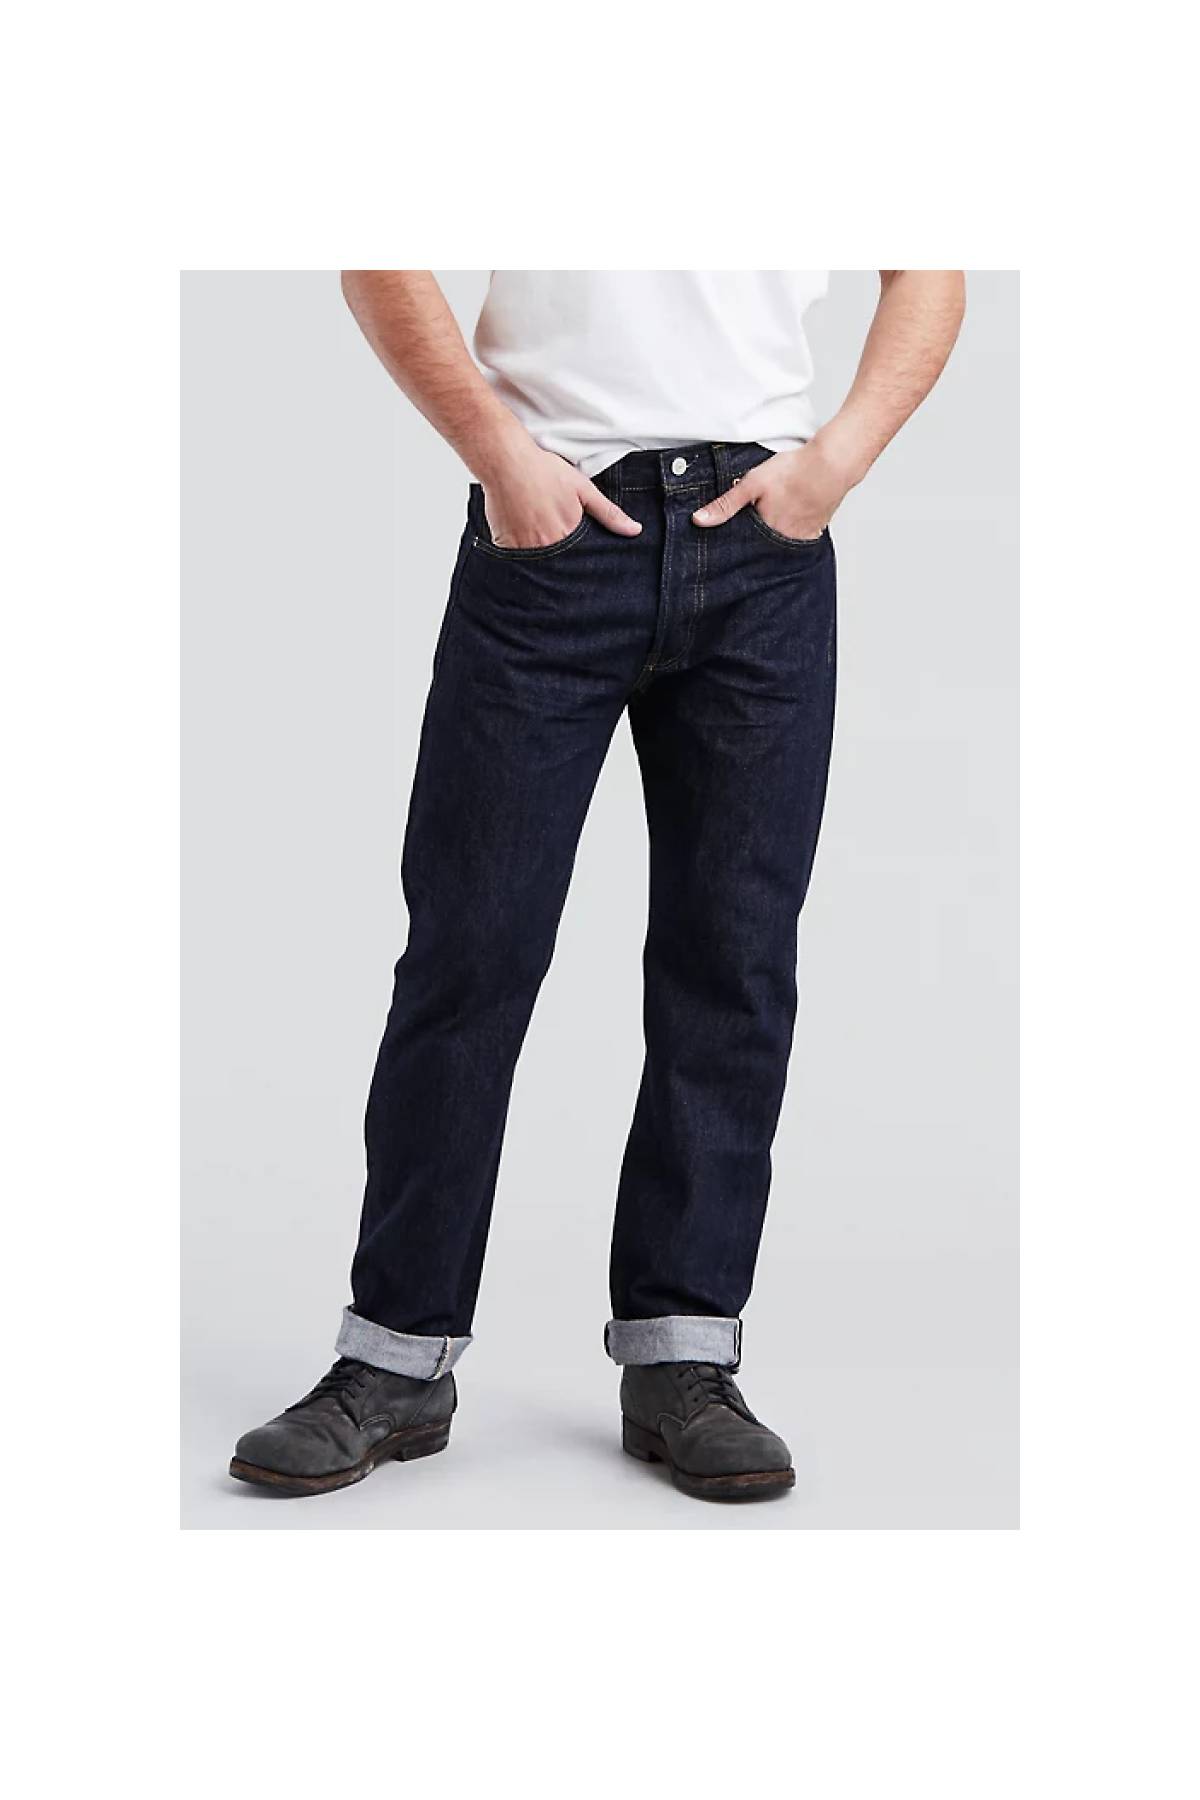 klassiek zak afbreken Men's Jeans Fit Guide - Types of Jean Fits & Styles for Men | Levi's® US